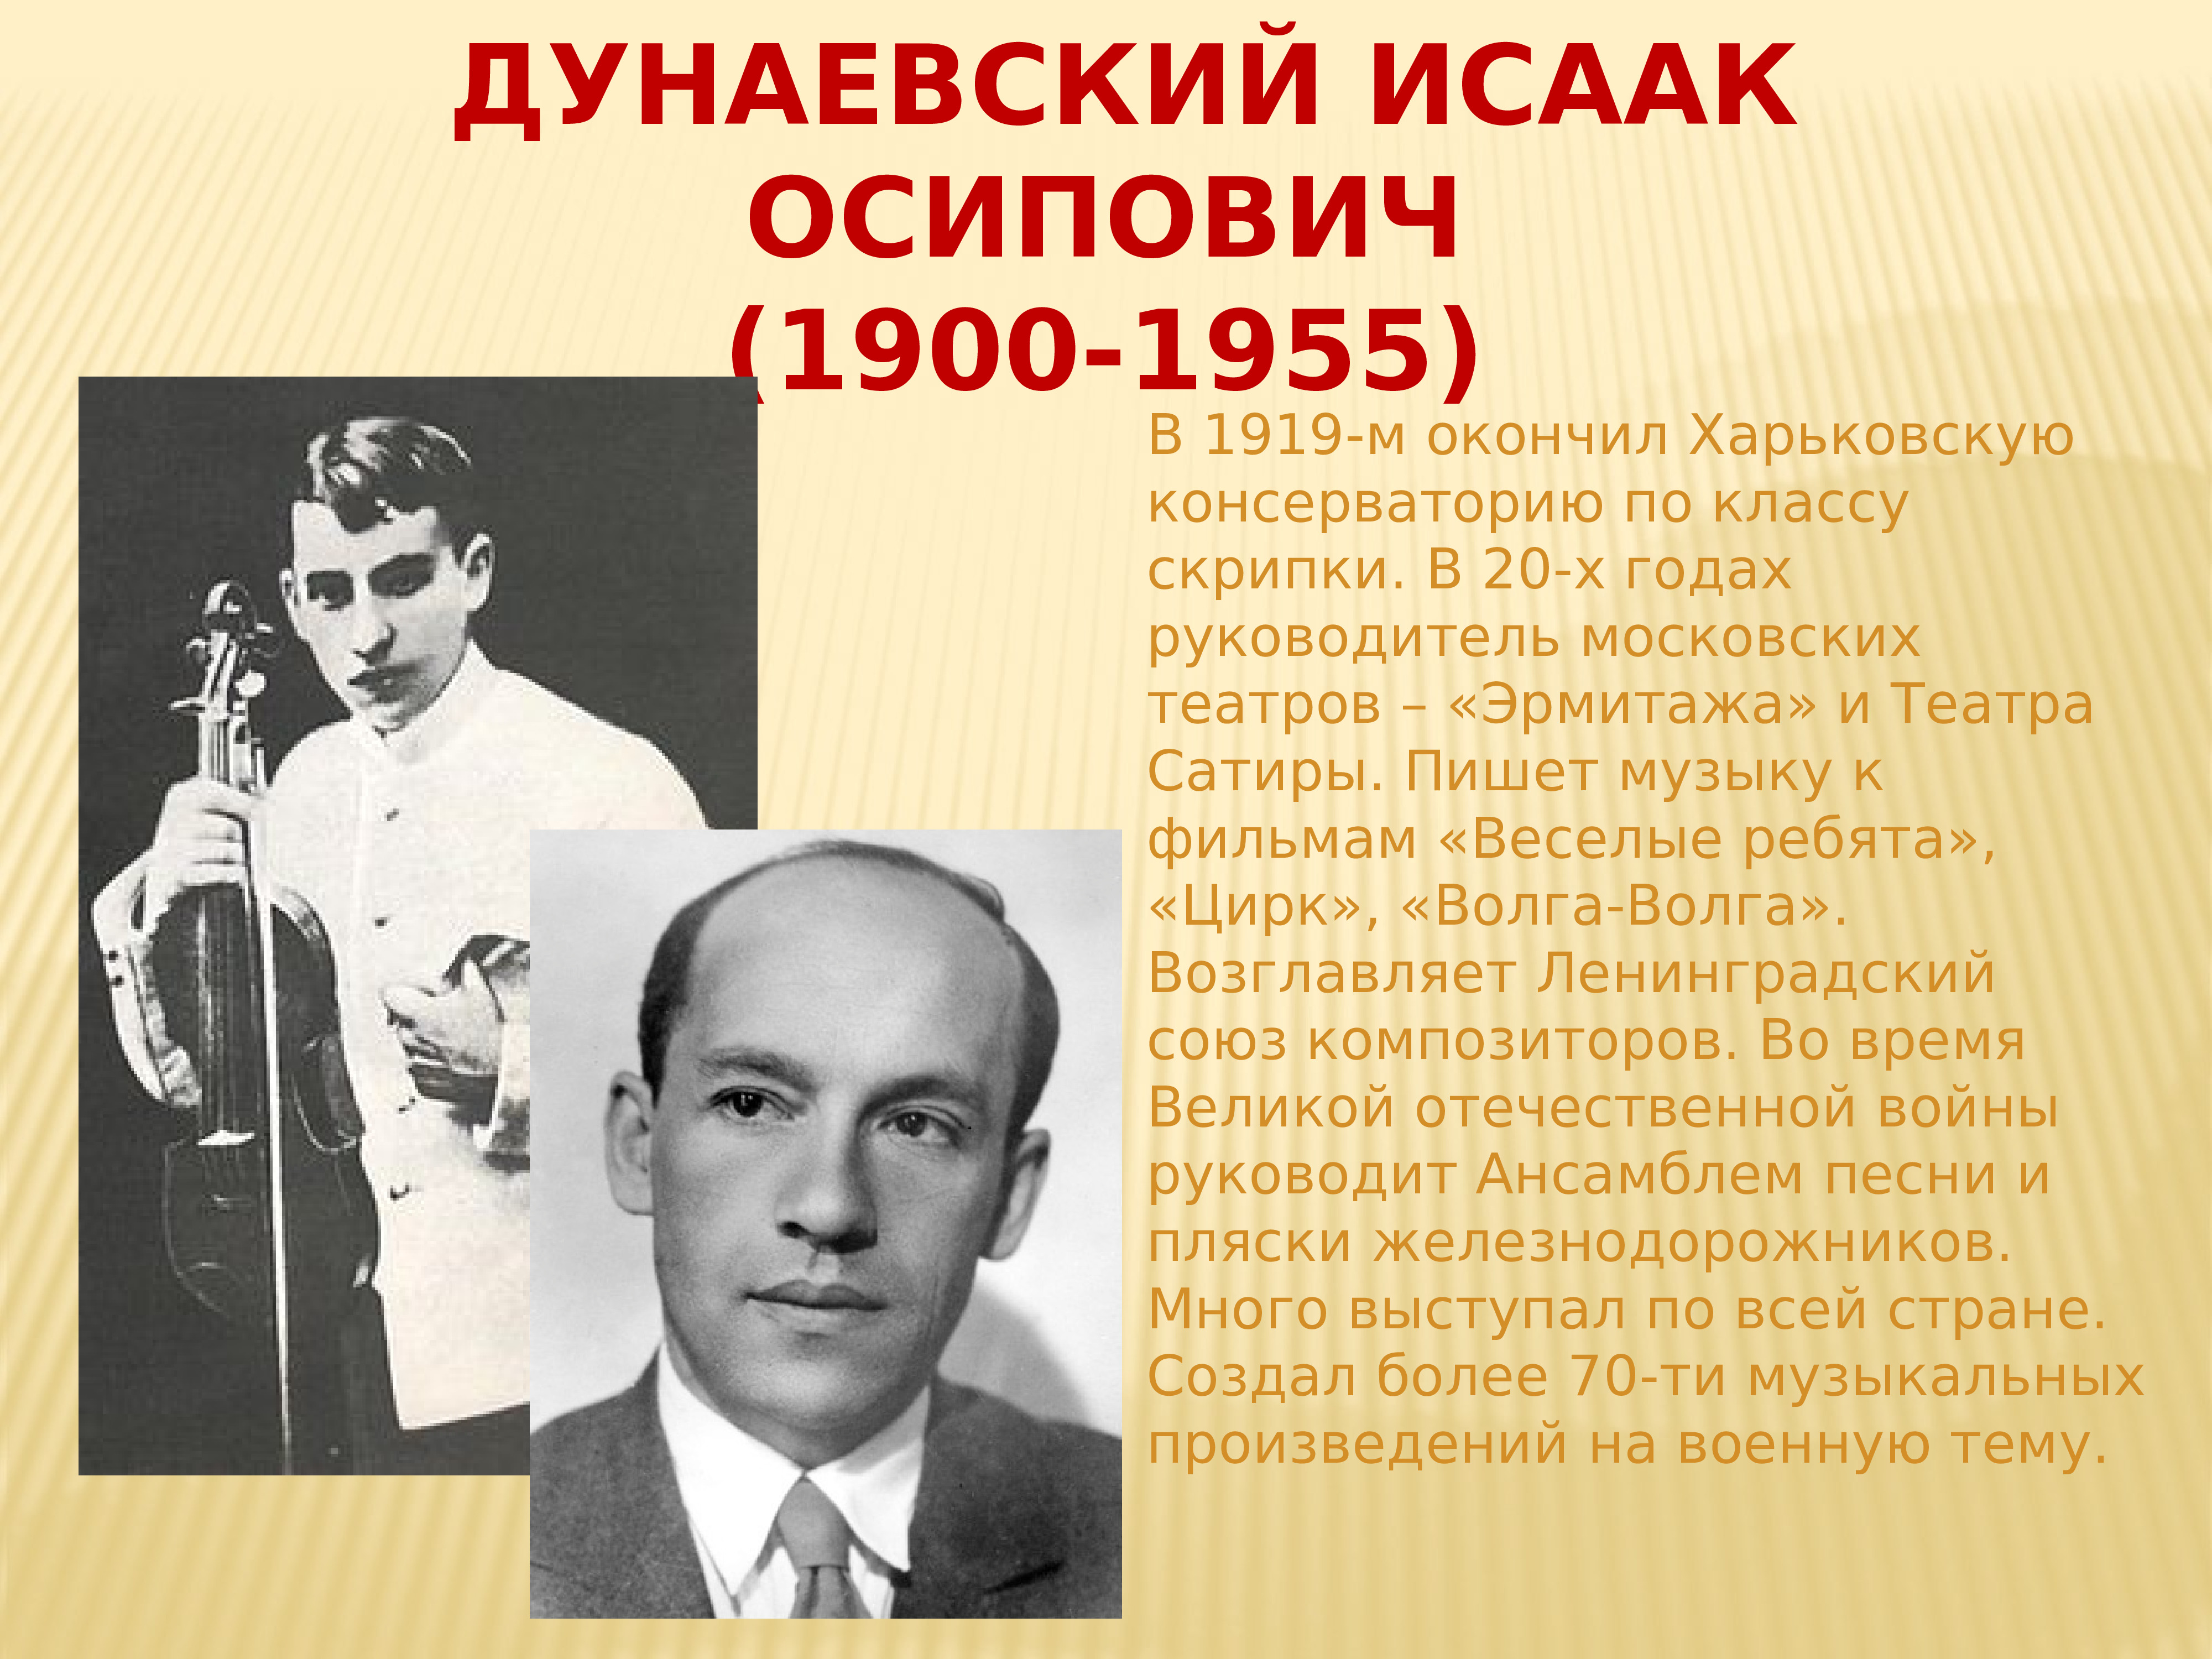 Советские композиторы песенники список и фото 20 века